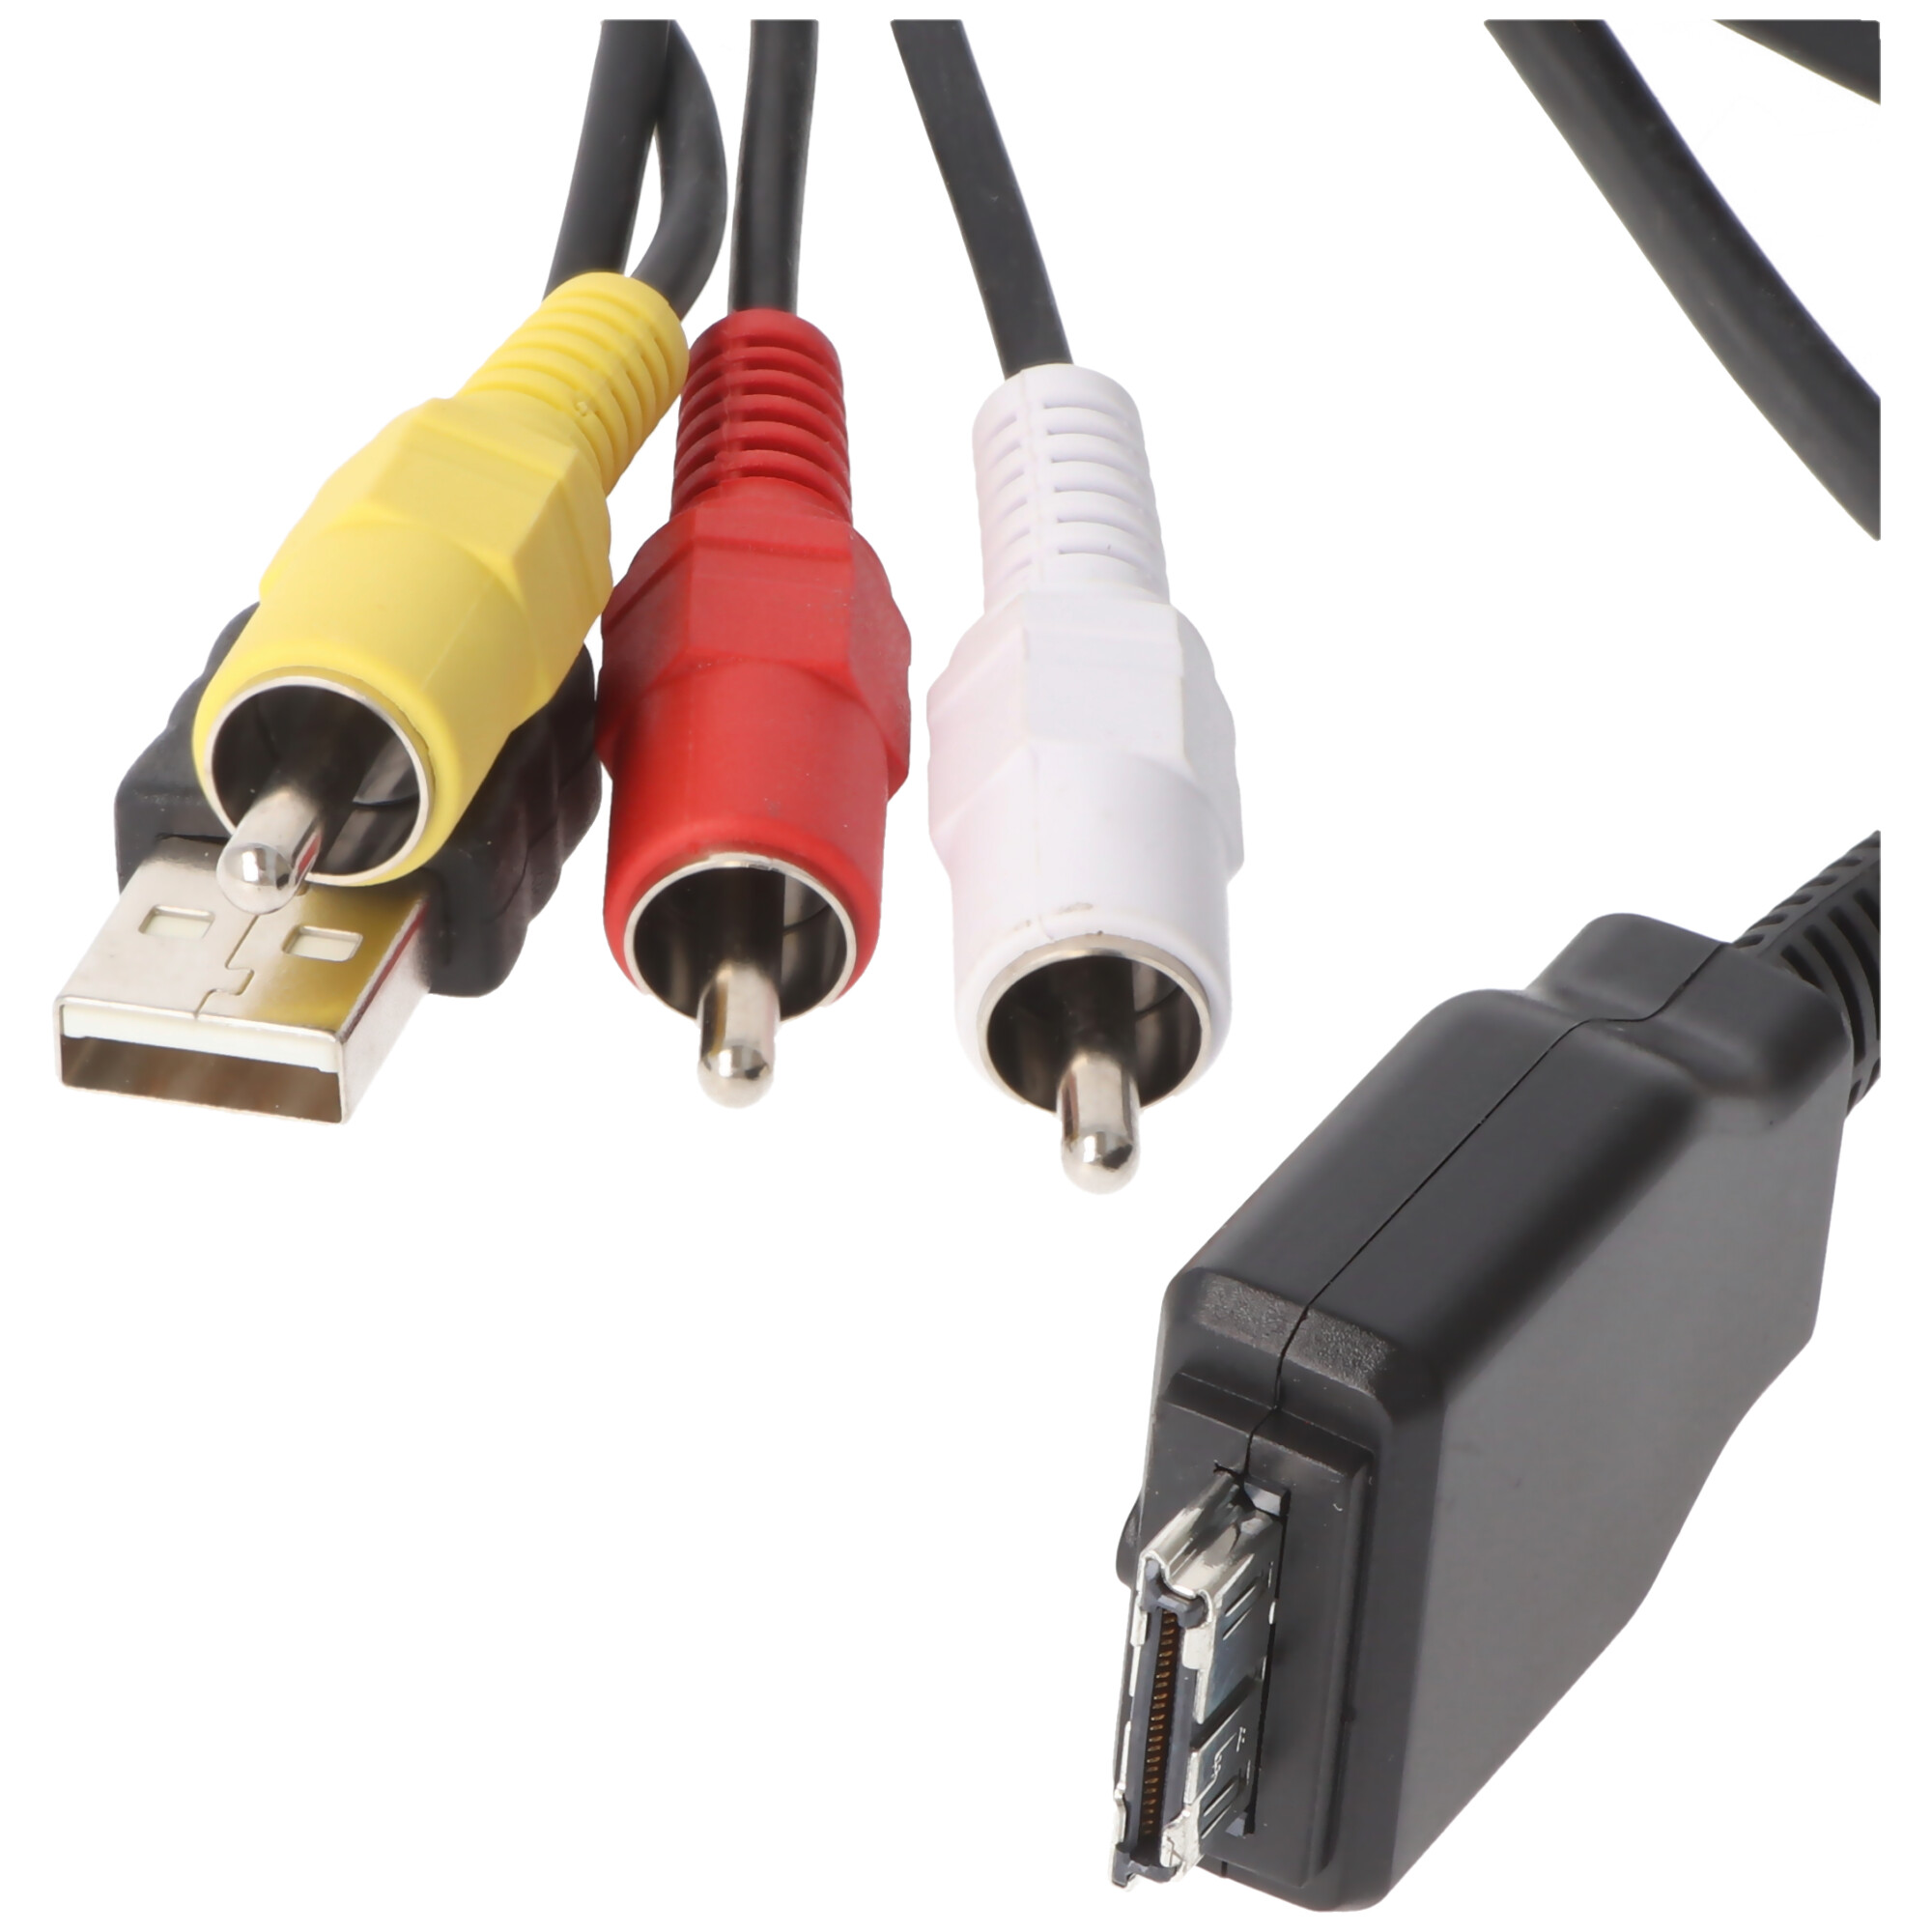 USB-/AV-Verbindungskabel passend für Sony CyberShot bzw. ersetzt VMC-MD2